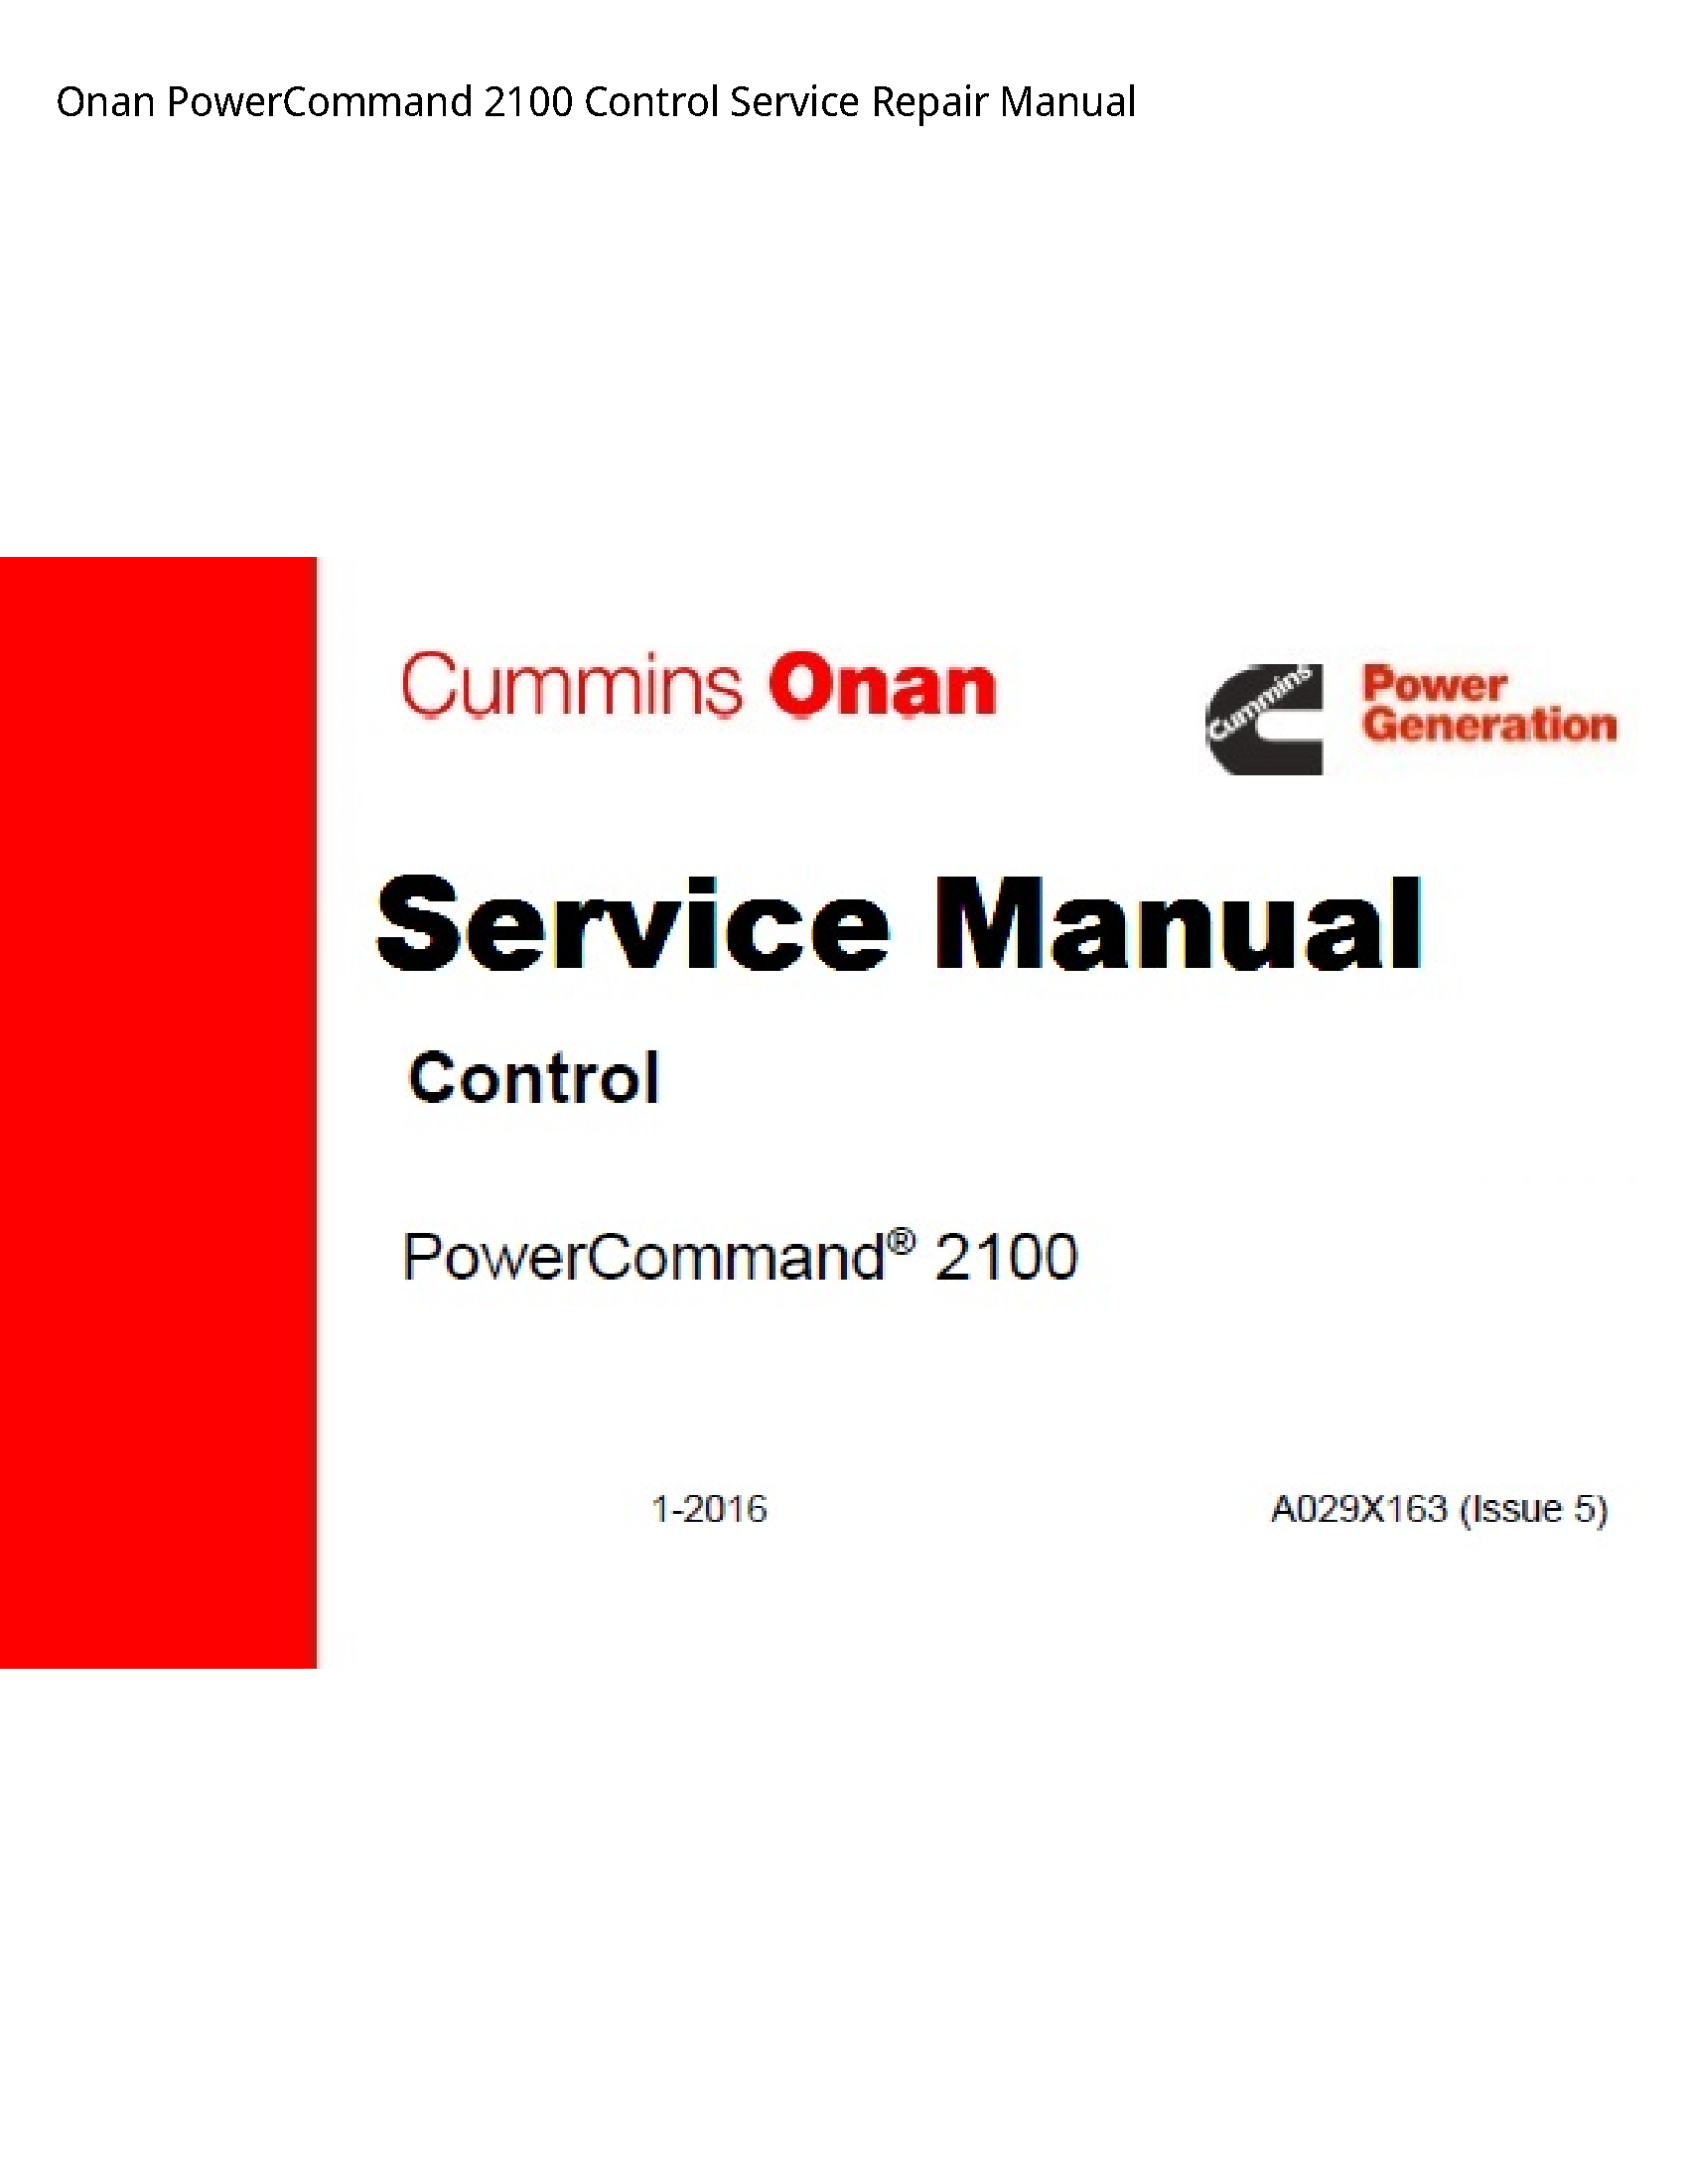 Onan 2100 PowerCommand Control manual